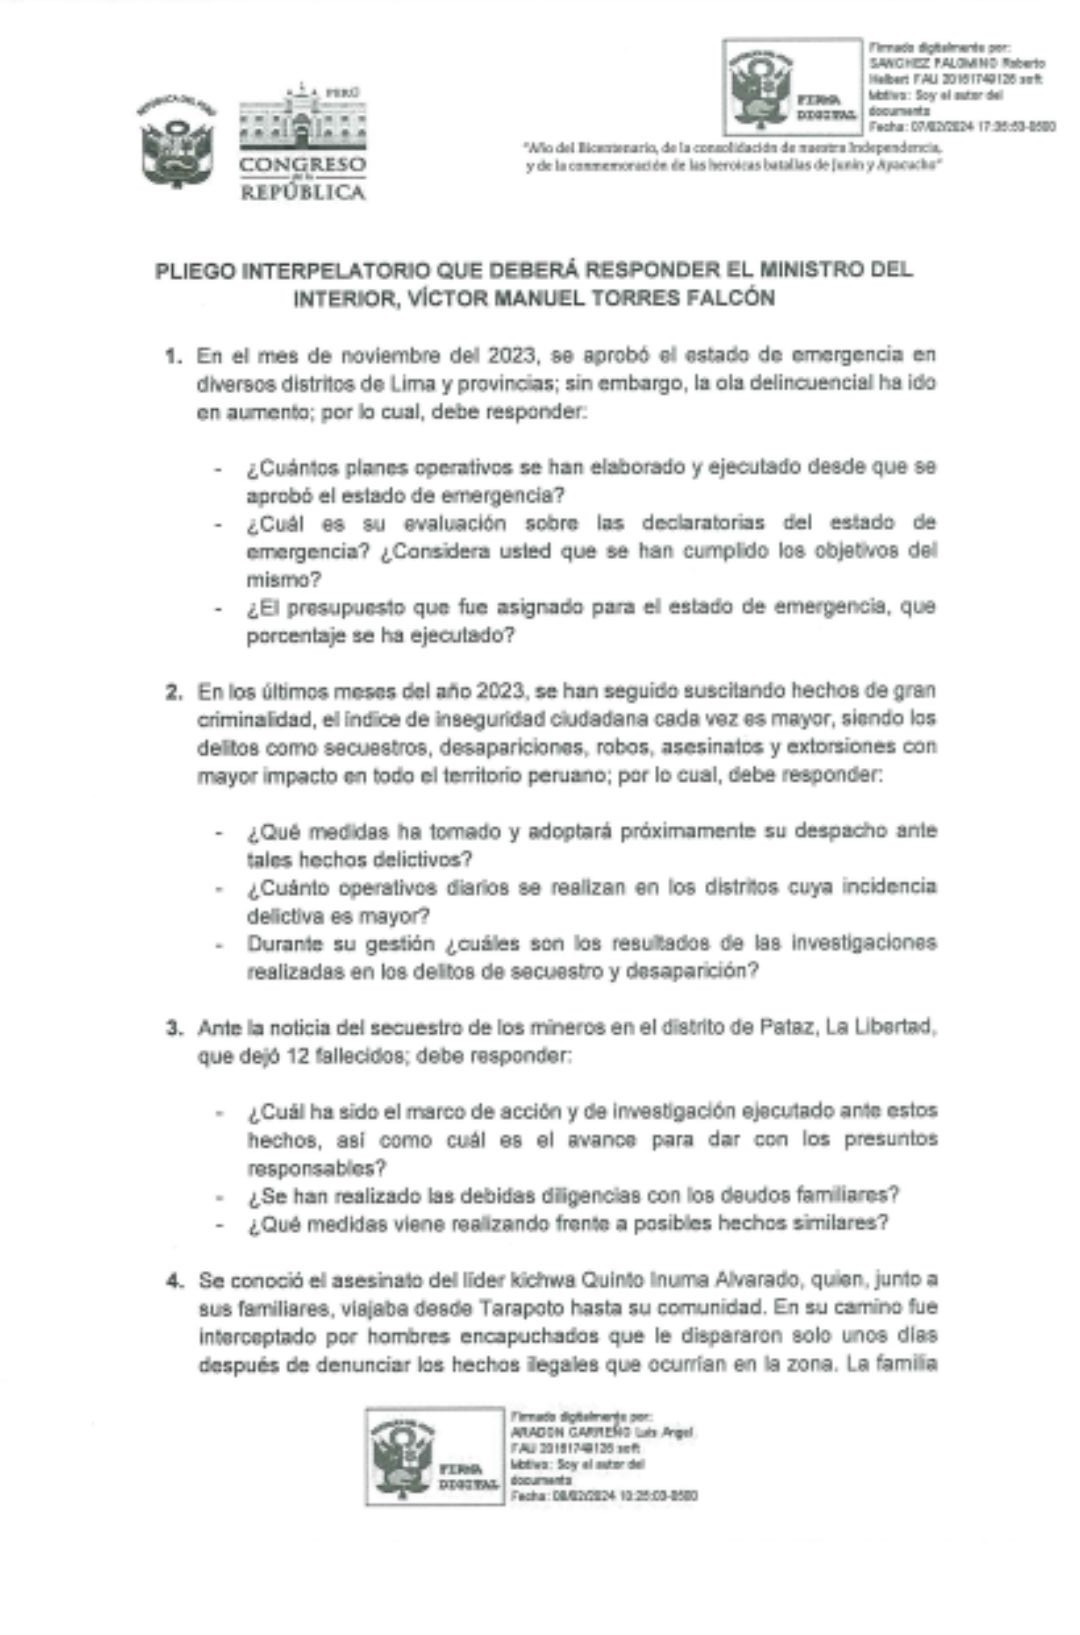 Pliego interpelatorio presentado contra el ministro del Interior, Víctor Torres Falcón